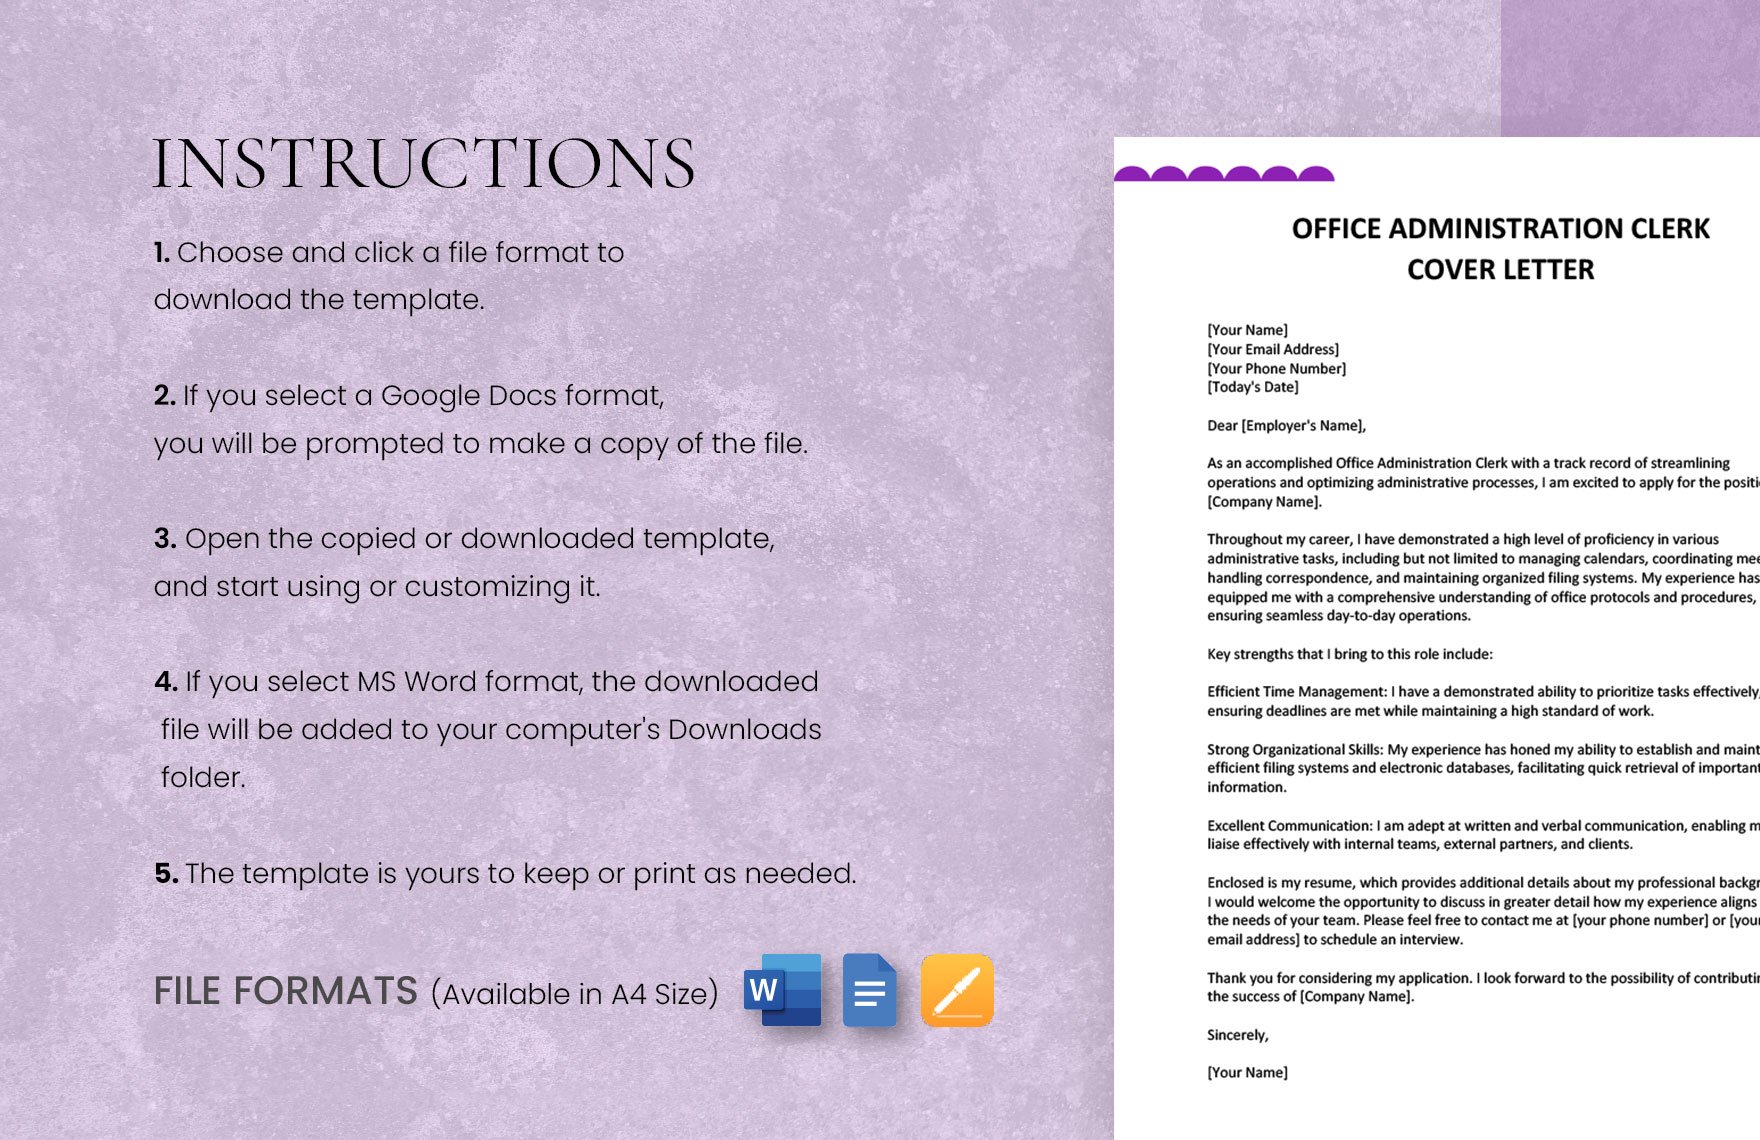 Office Administration Clerk Cover Letter